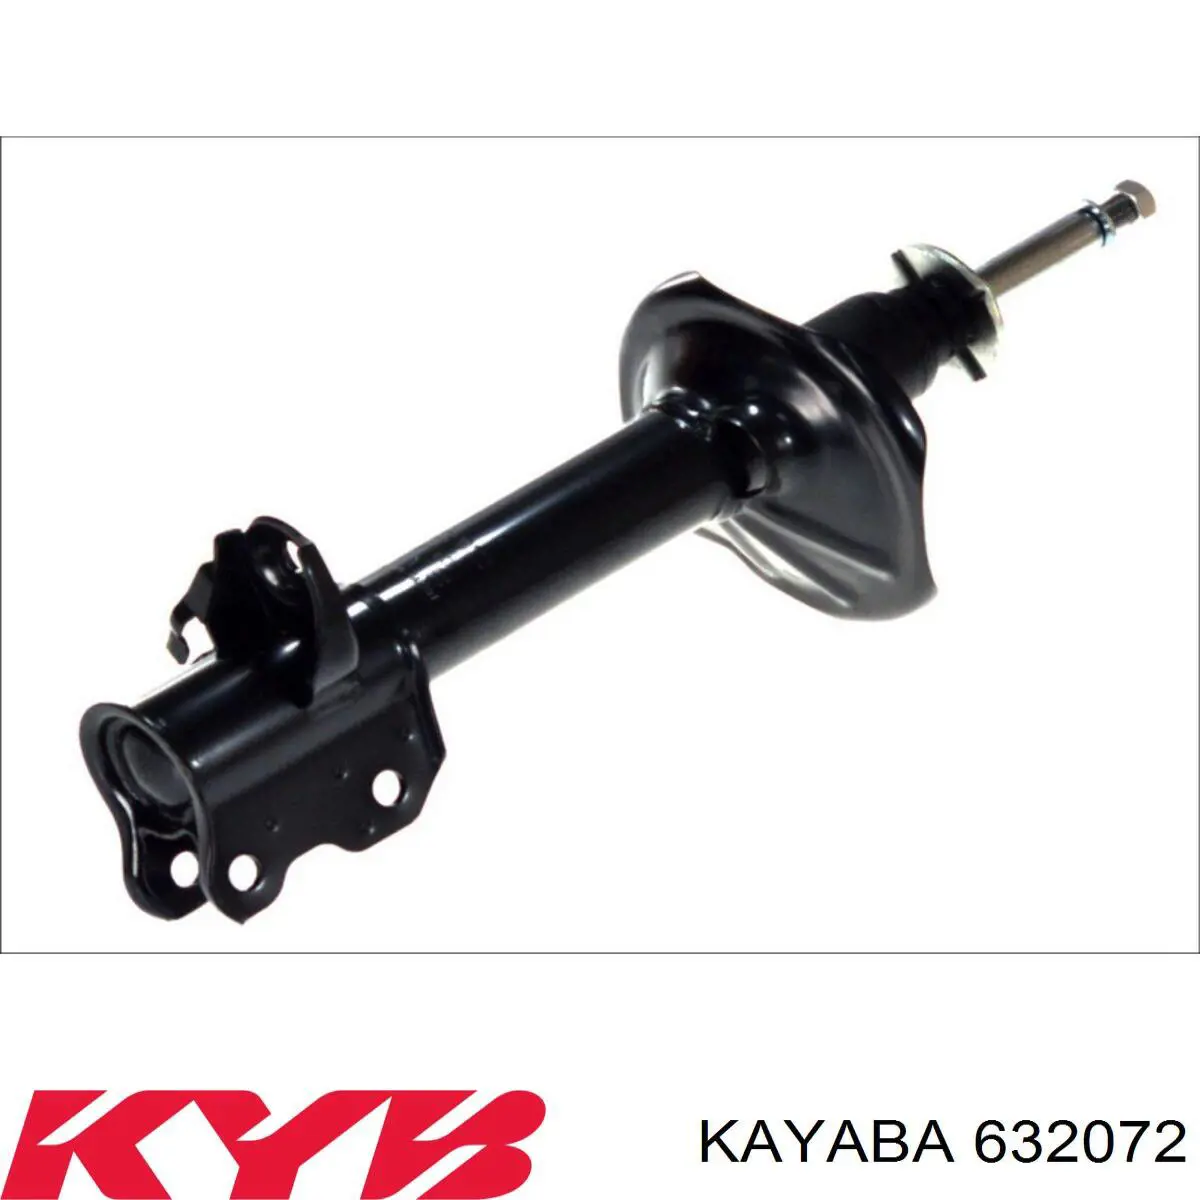 632072 Kayaba amortiguador trasero derecho